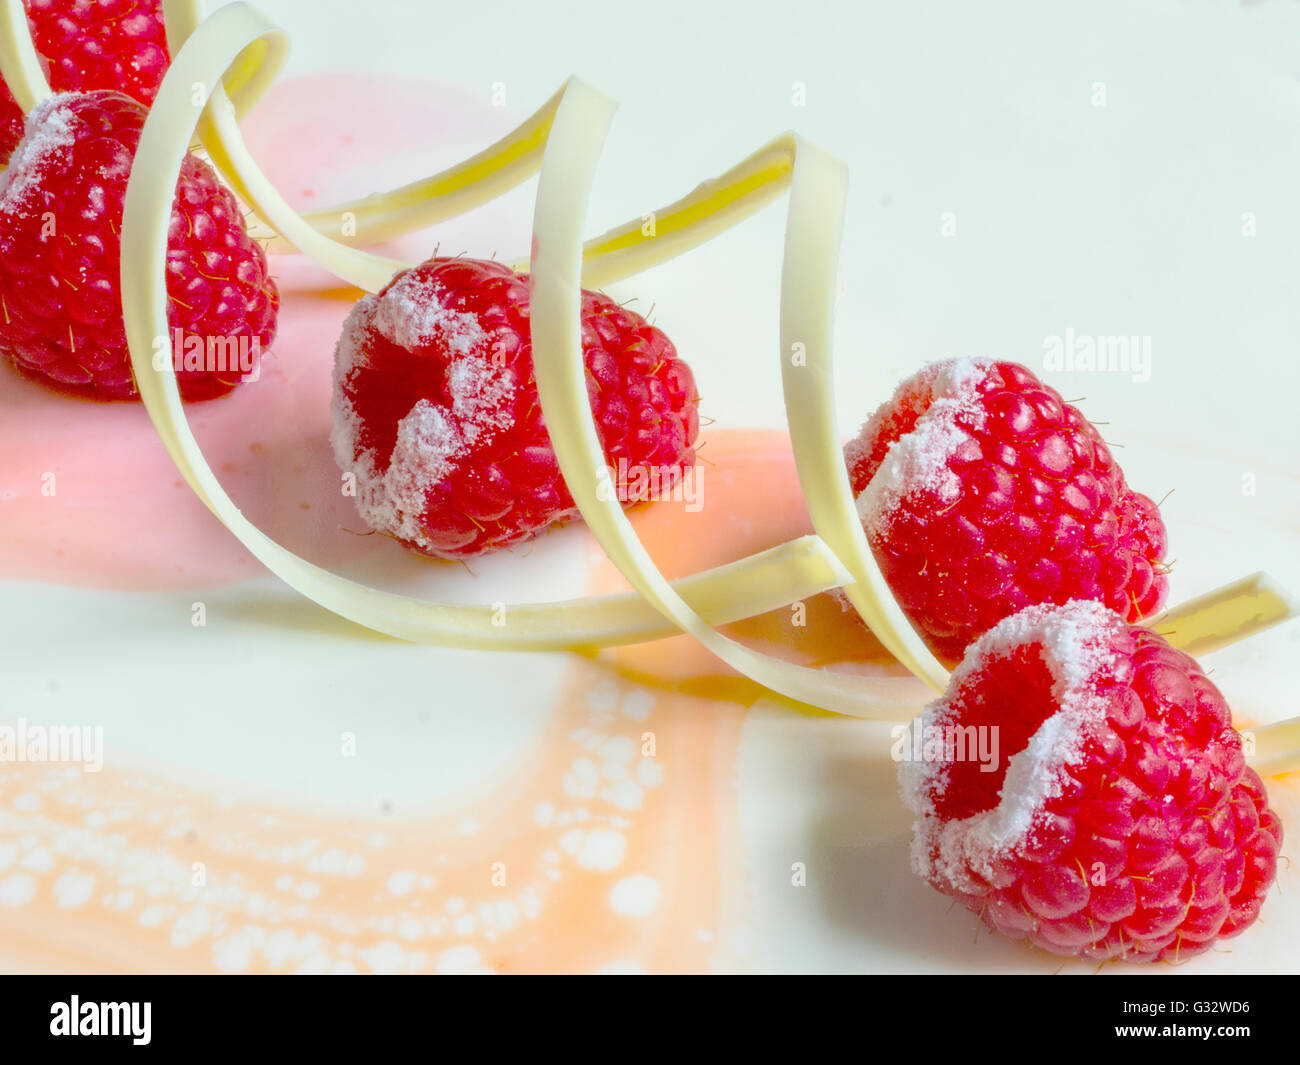 White chocolate and raspberry cake Stock Photo